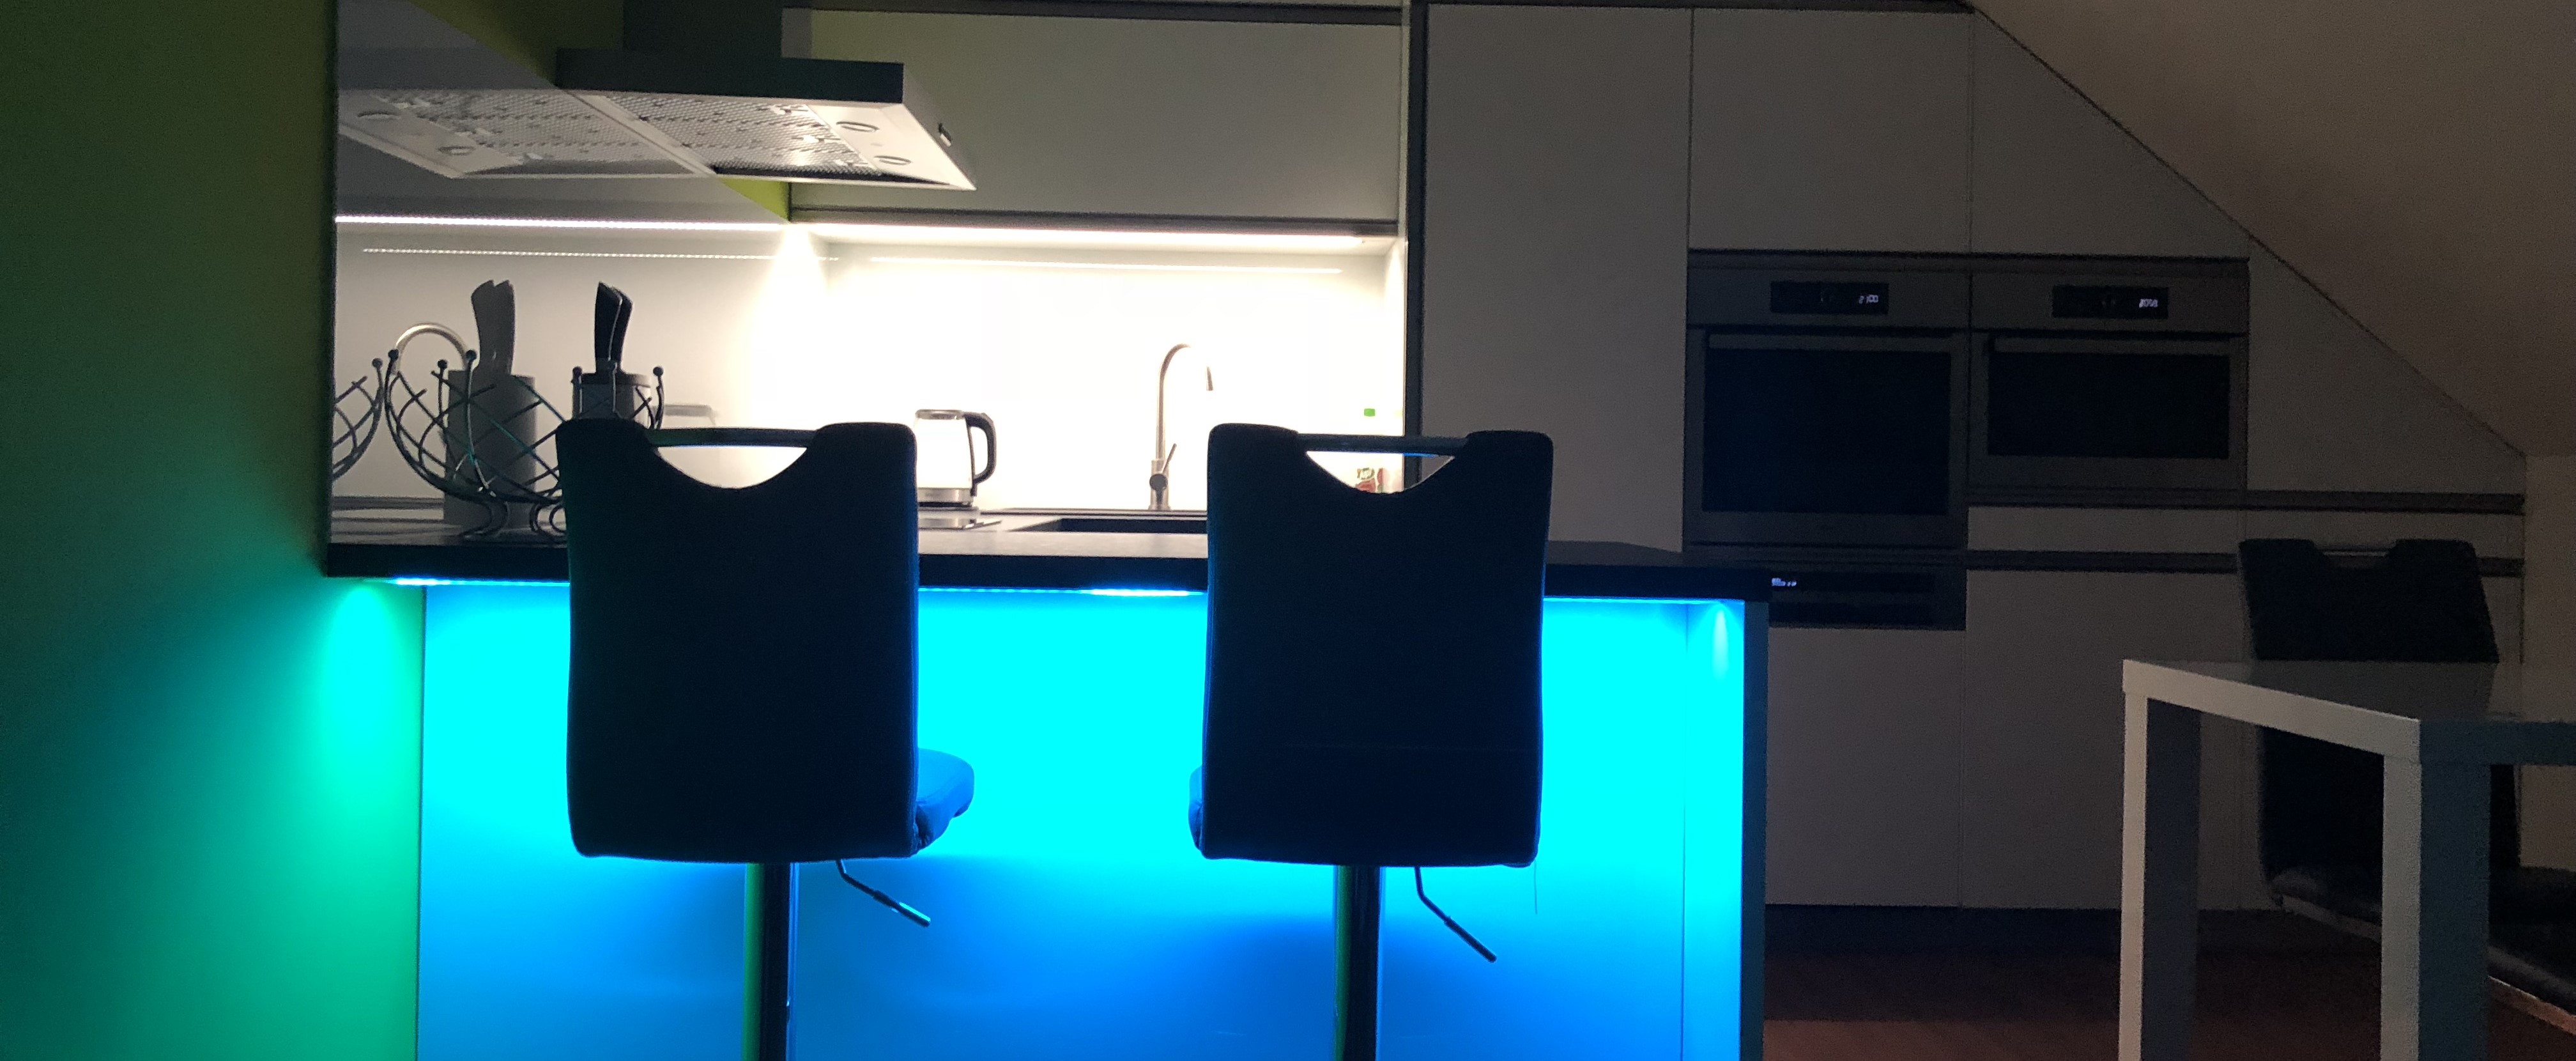 Volba barvy světla pro LED pásky v kuchyni.